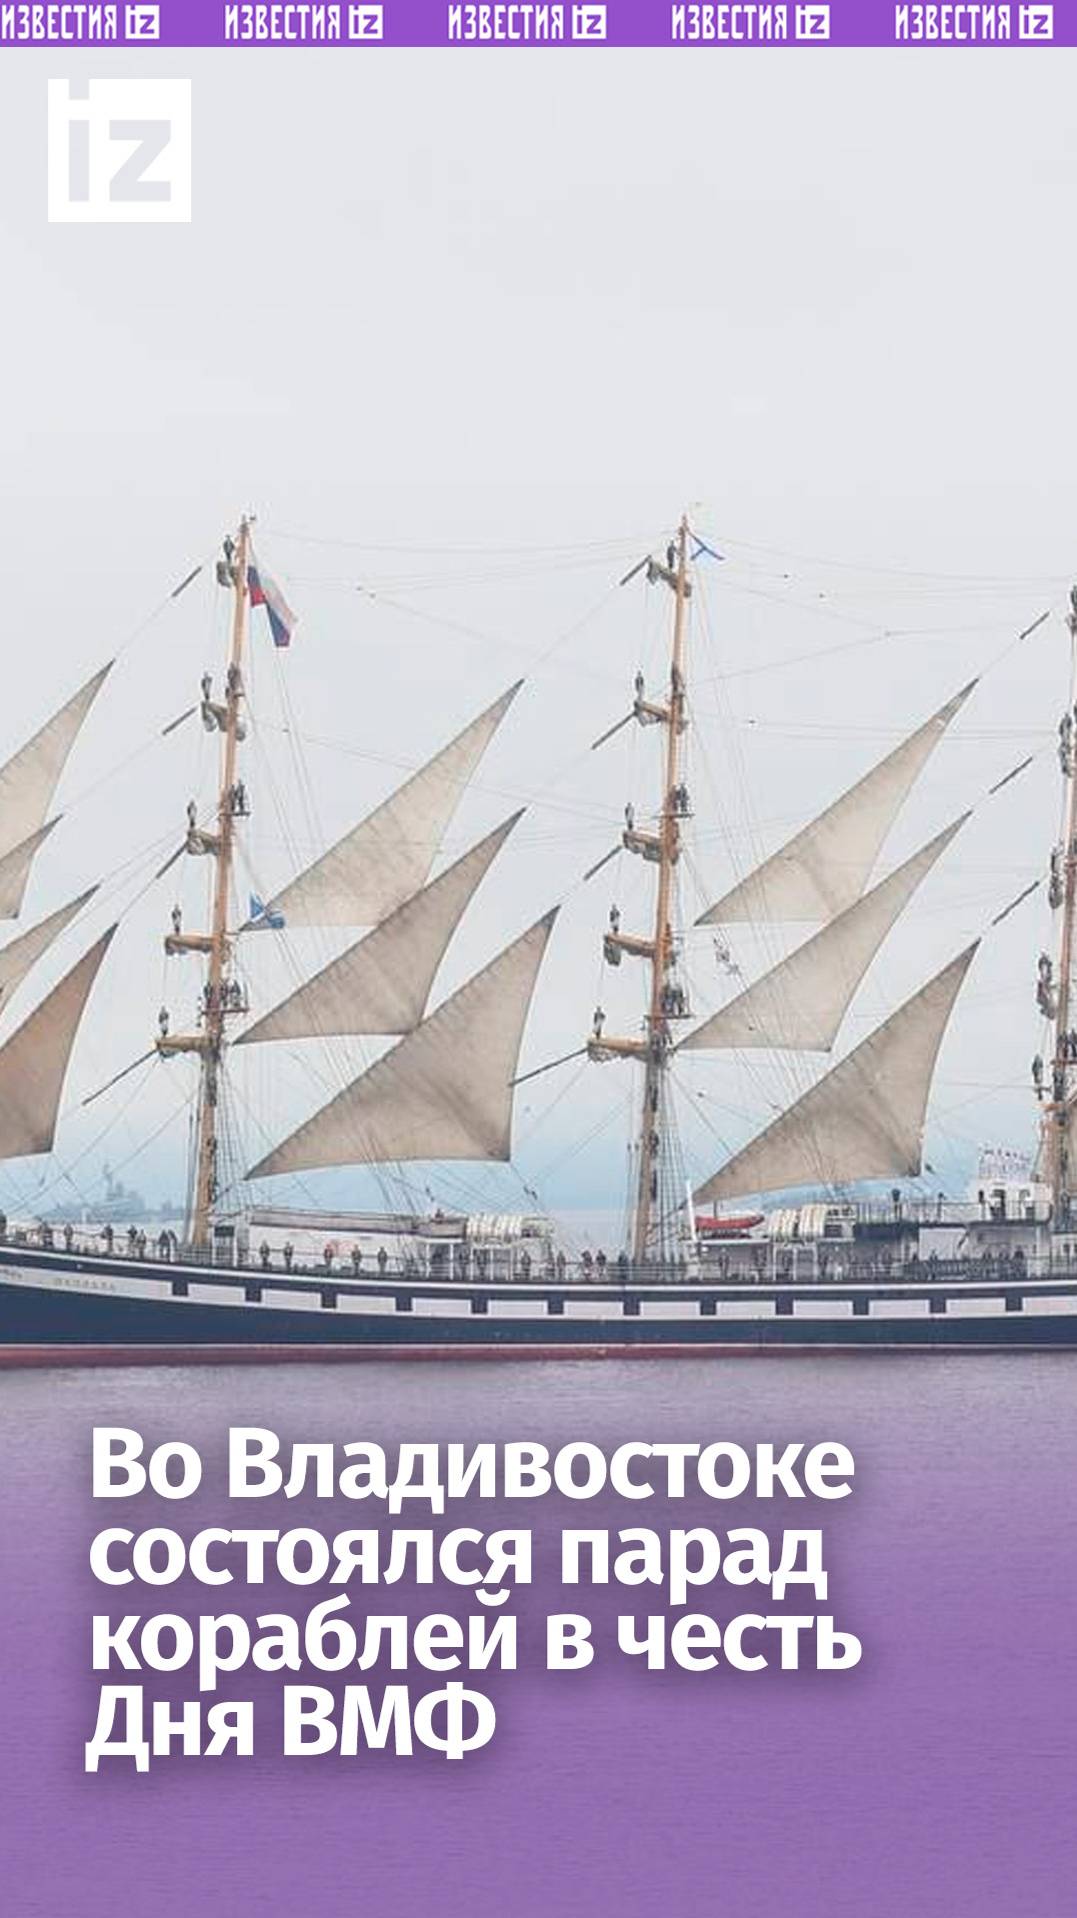 Сила и красота: во Владивостоке состоялся парад кораблей в честь Дня ВМФ